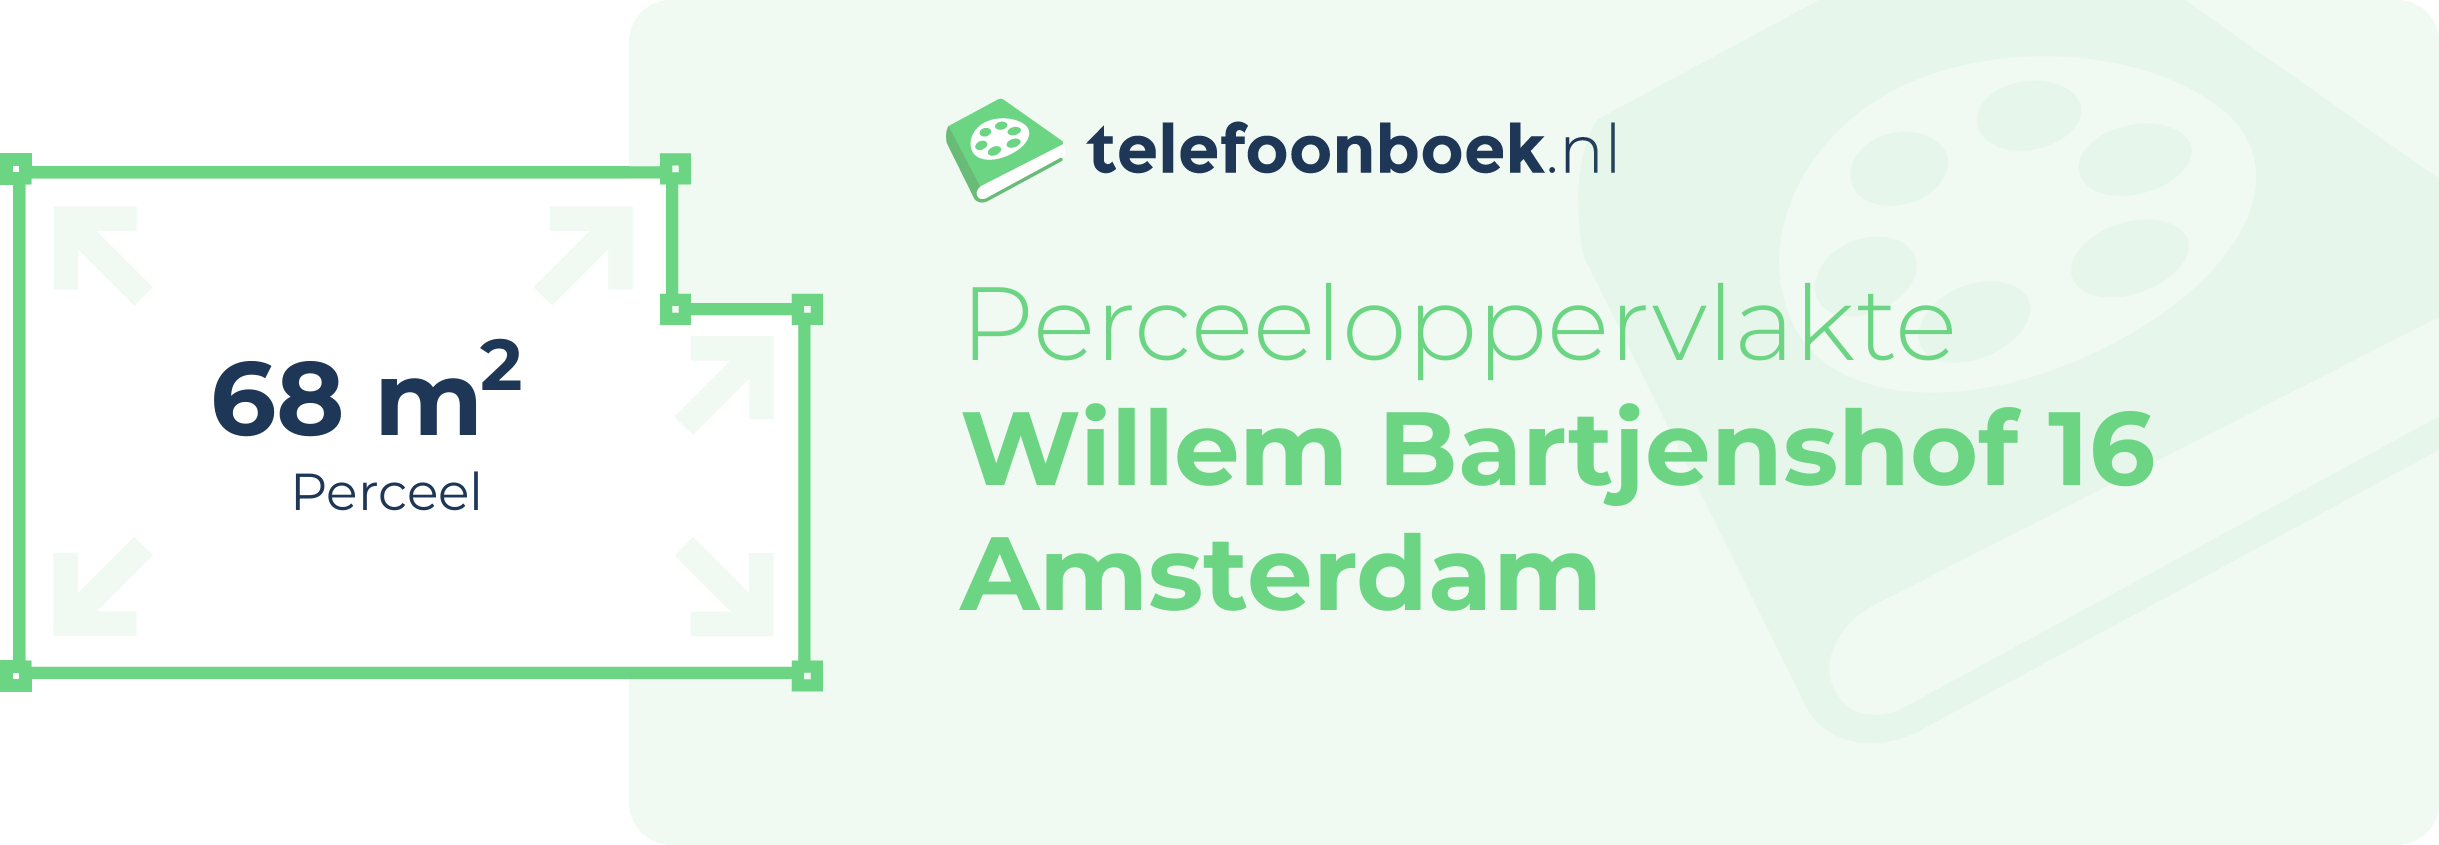 Perceeloppervlakte Willem Bartjenshof 16 Amsterdam